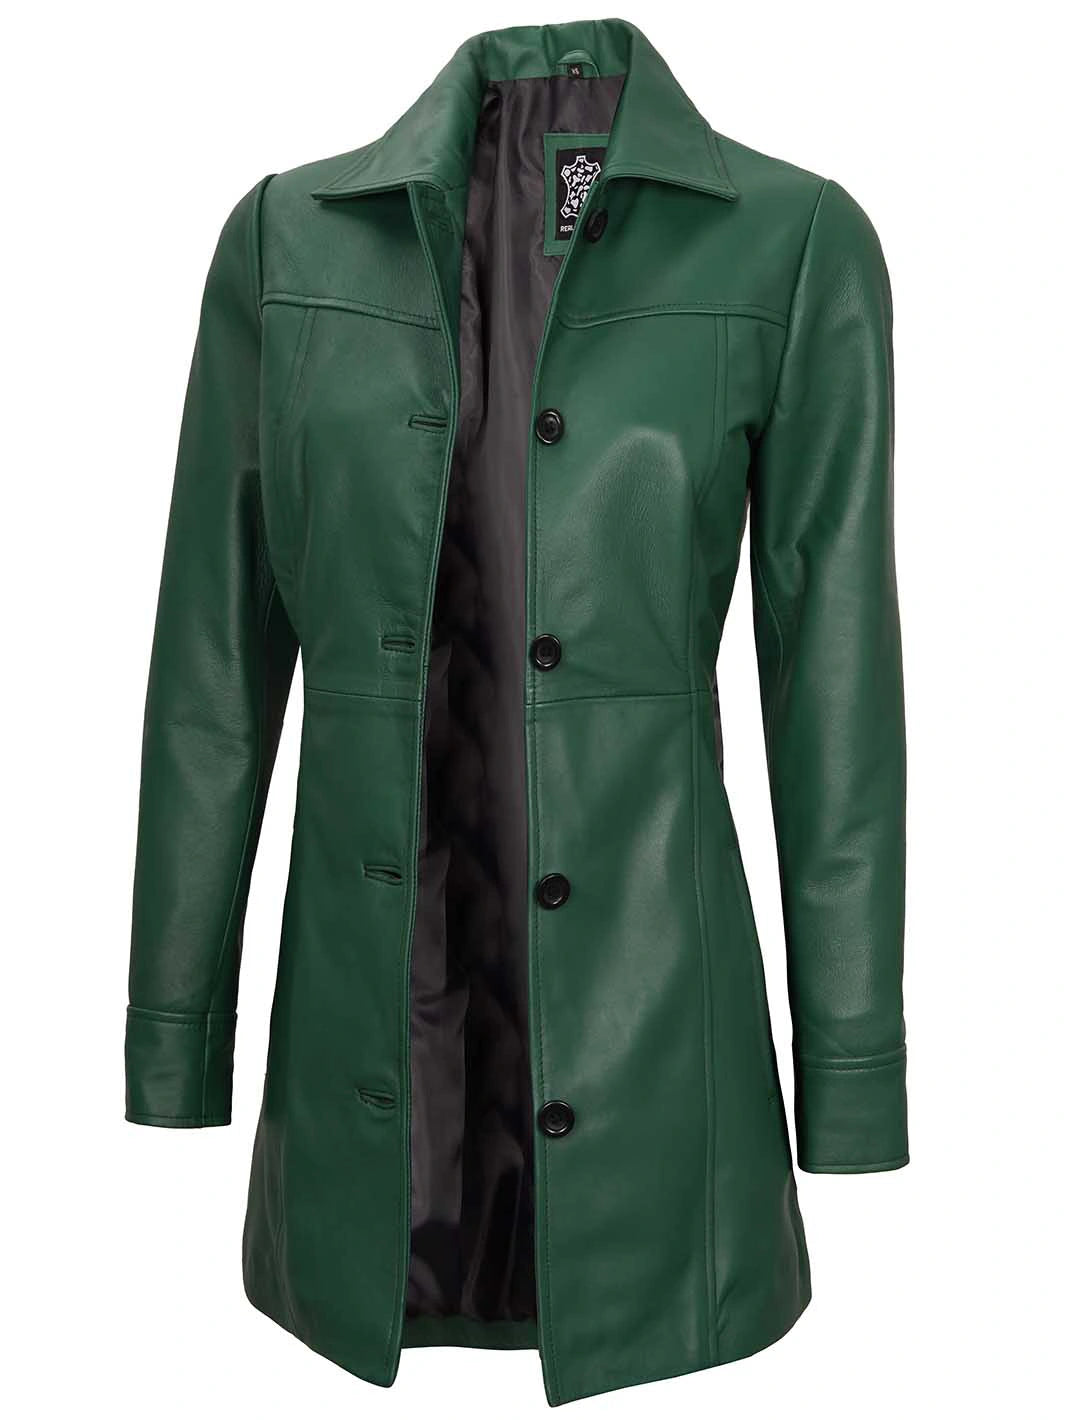 Green leather jacket coat